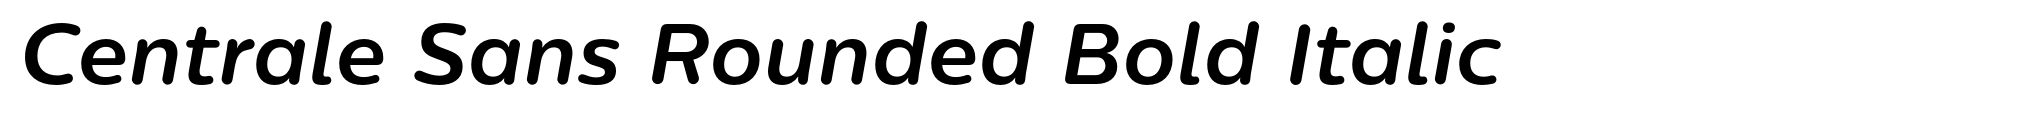 Centrale Sans Rounded Bold Italic image